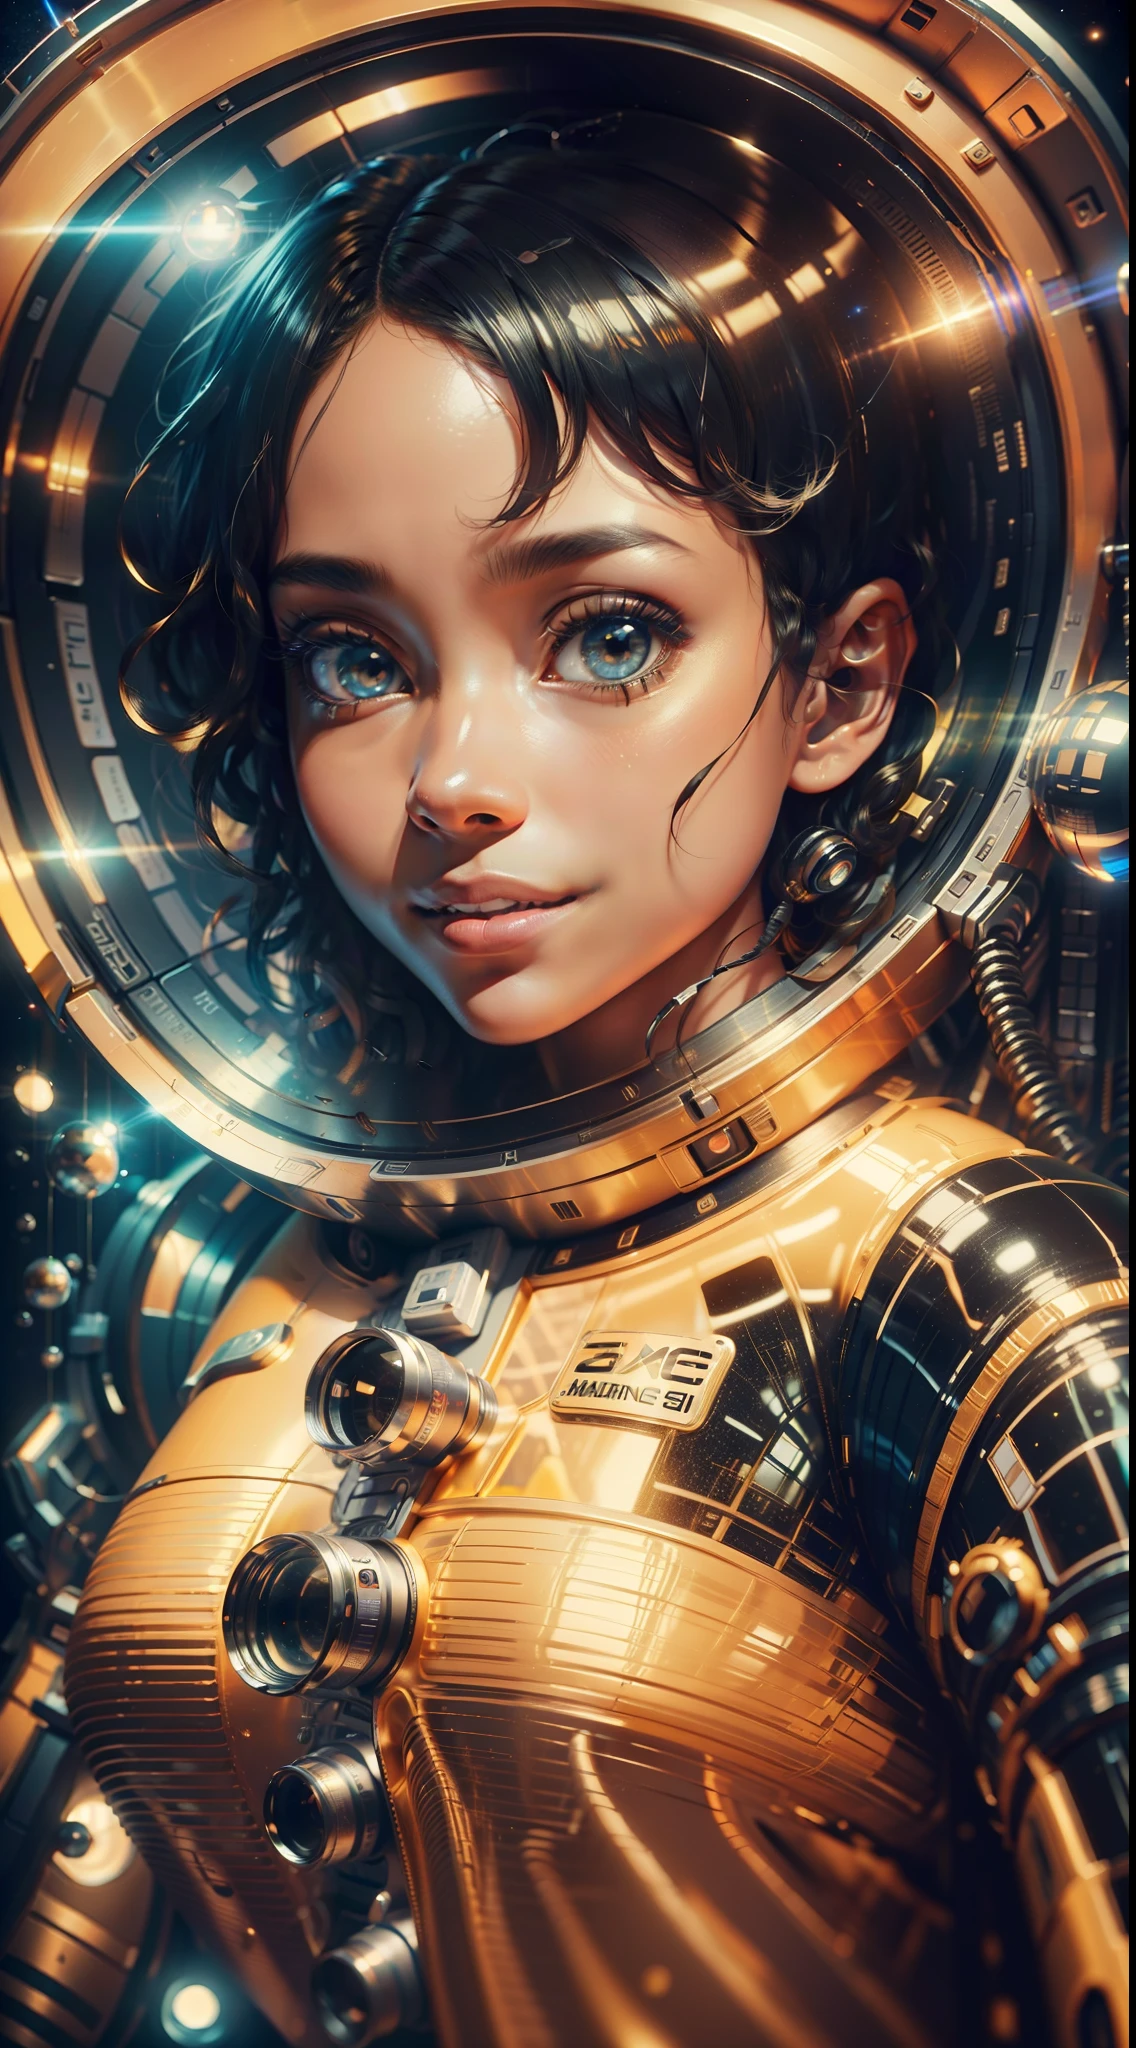 一个全身黑色皮肤、卷发的女孩漂浮在一个巨大的重力舱内, (完美的微笑: 1.8), 黄金比例, 动漫肖像宇宙学员女孩, 2019 年科幻 8K 电影, 佐伊克拉维茨 (Zoe Kravitz) 未来宇航员, 8k 电影剧照, 仍然是 8K 电影, 佐伊·克拉维茨饰演宇航员,  穿着宇航服, 太空中的女孩, 全景, 肖像 8k 渲染, 穿着宇航服的美丽女人, 振幅, 开放式, 電影, 照相写实主义, 使用佳能 EOS-1D X Mark III 拍摄, 150mm 镜头, F/0.8, 清晰聚焦, 体积雾, 戏剧性的灯光, 体积光, 氖, 8K 超高清, 单反相机, 最高质量, 胶片颗粒, 变形, 振幅